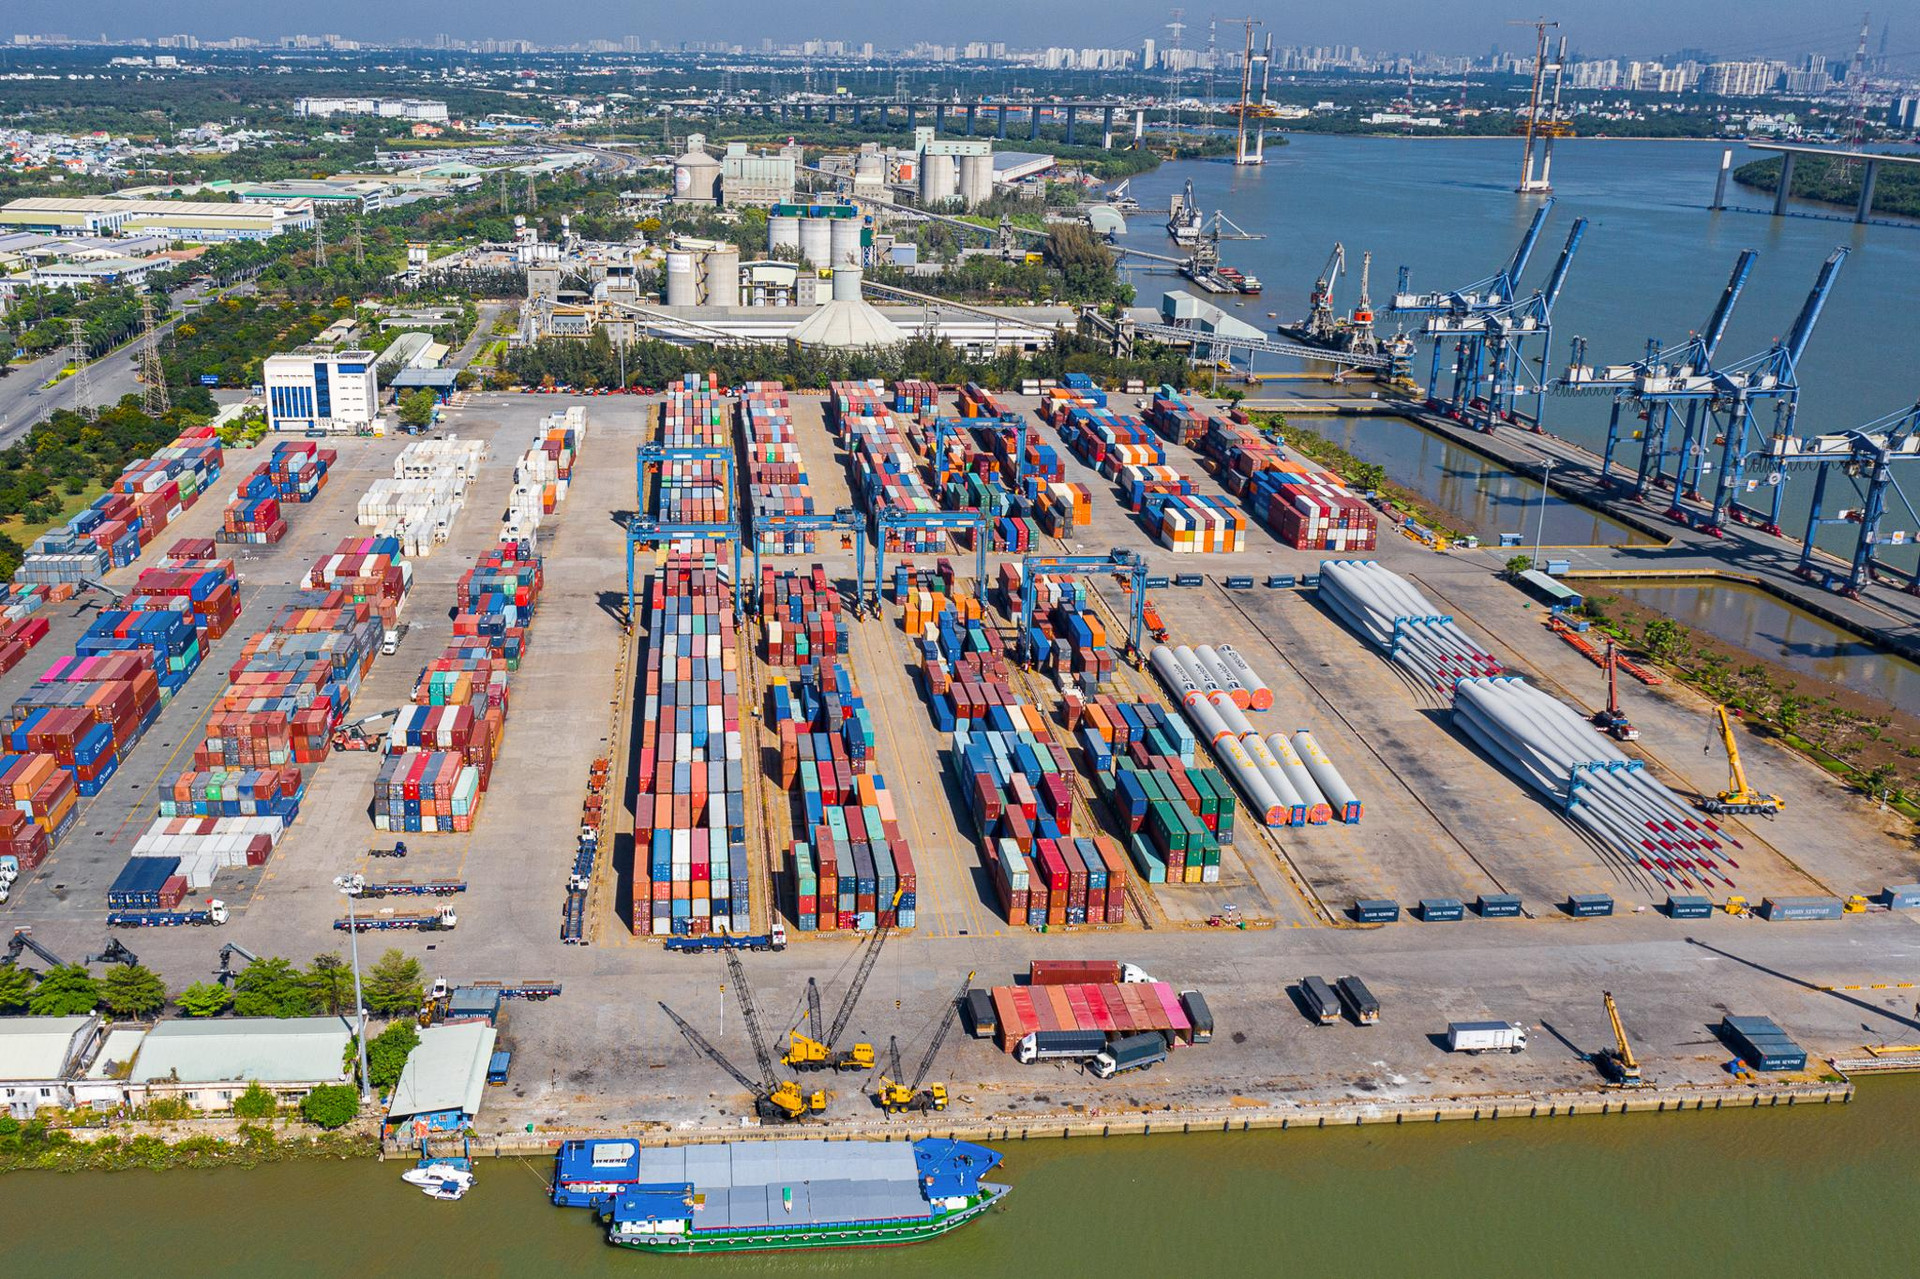 ‏K‏‏hu công nghiệp ‏‏có đến 3 cảng quốc tế, rộng nhất ‏‏TP. HCM - Ảnh 5.